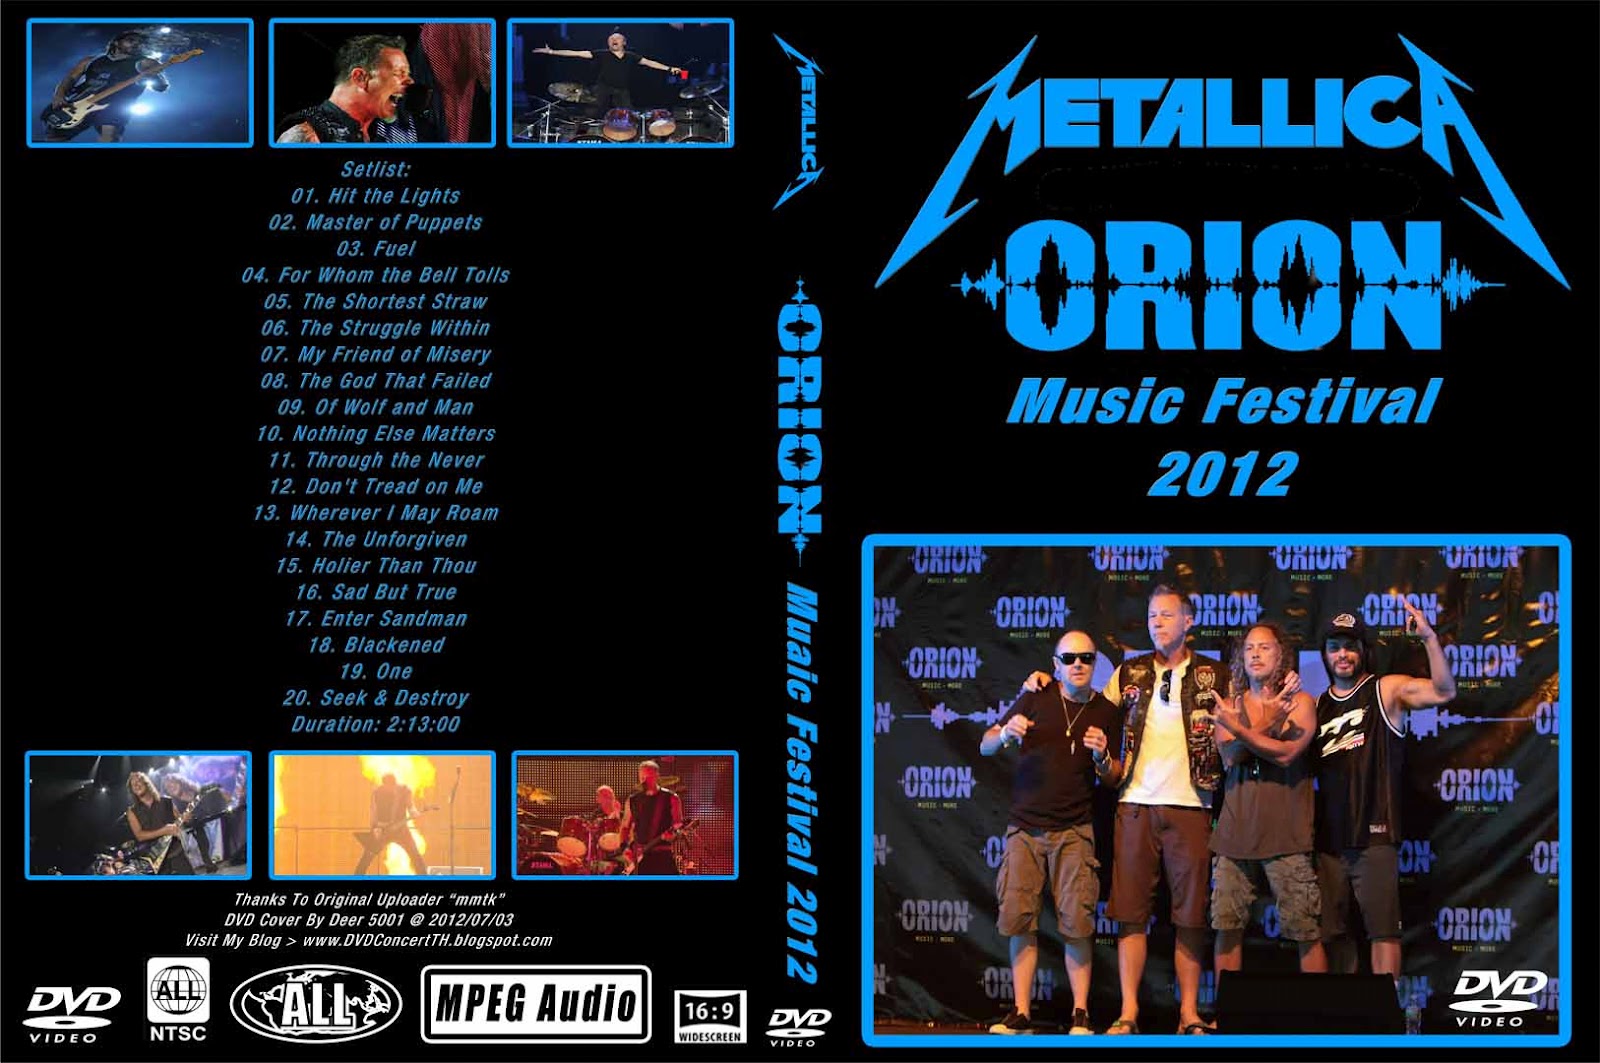 http://3.bp.blogspot.com/-A4GkOtz2m00/T_QYICBCawI/AAAAAAAAGpQ/lF1fc4RfIgQ/s1600/DVD+Cover+Metallica+-+Orion+Music+Festival+2012+-+The+Black+Album+.jpg